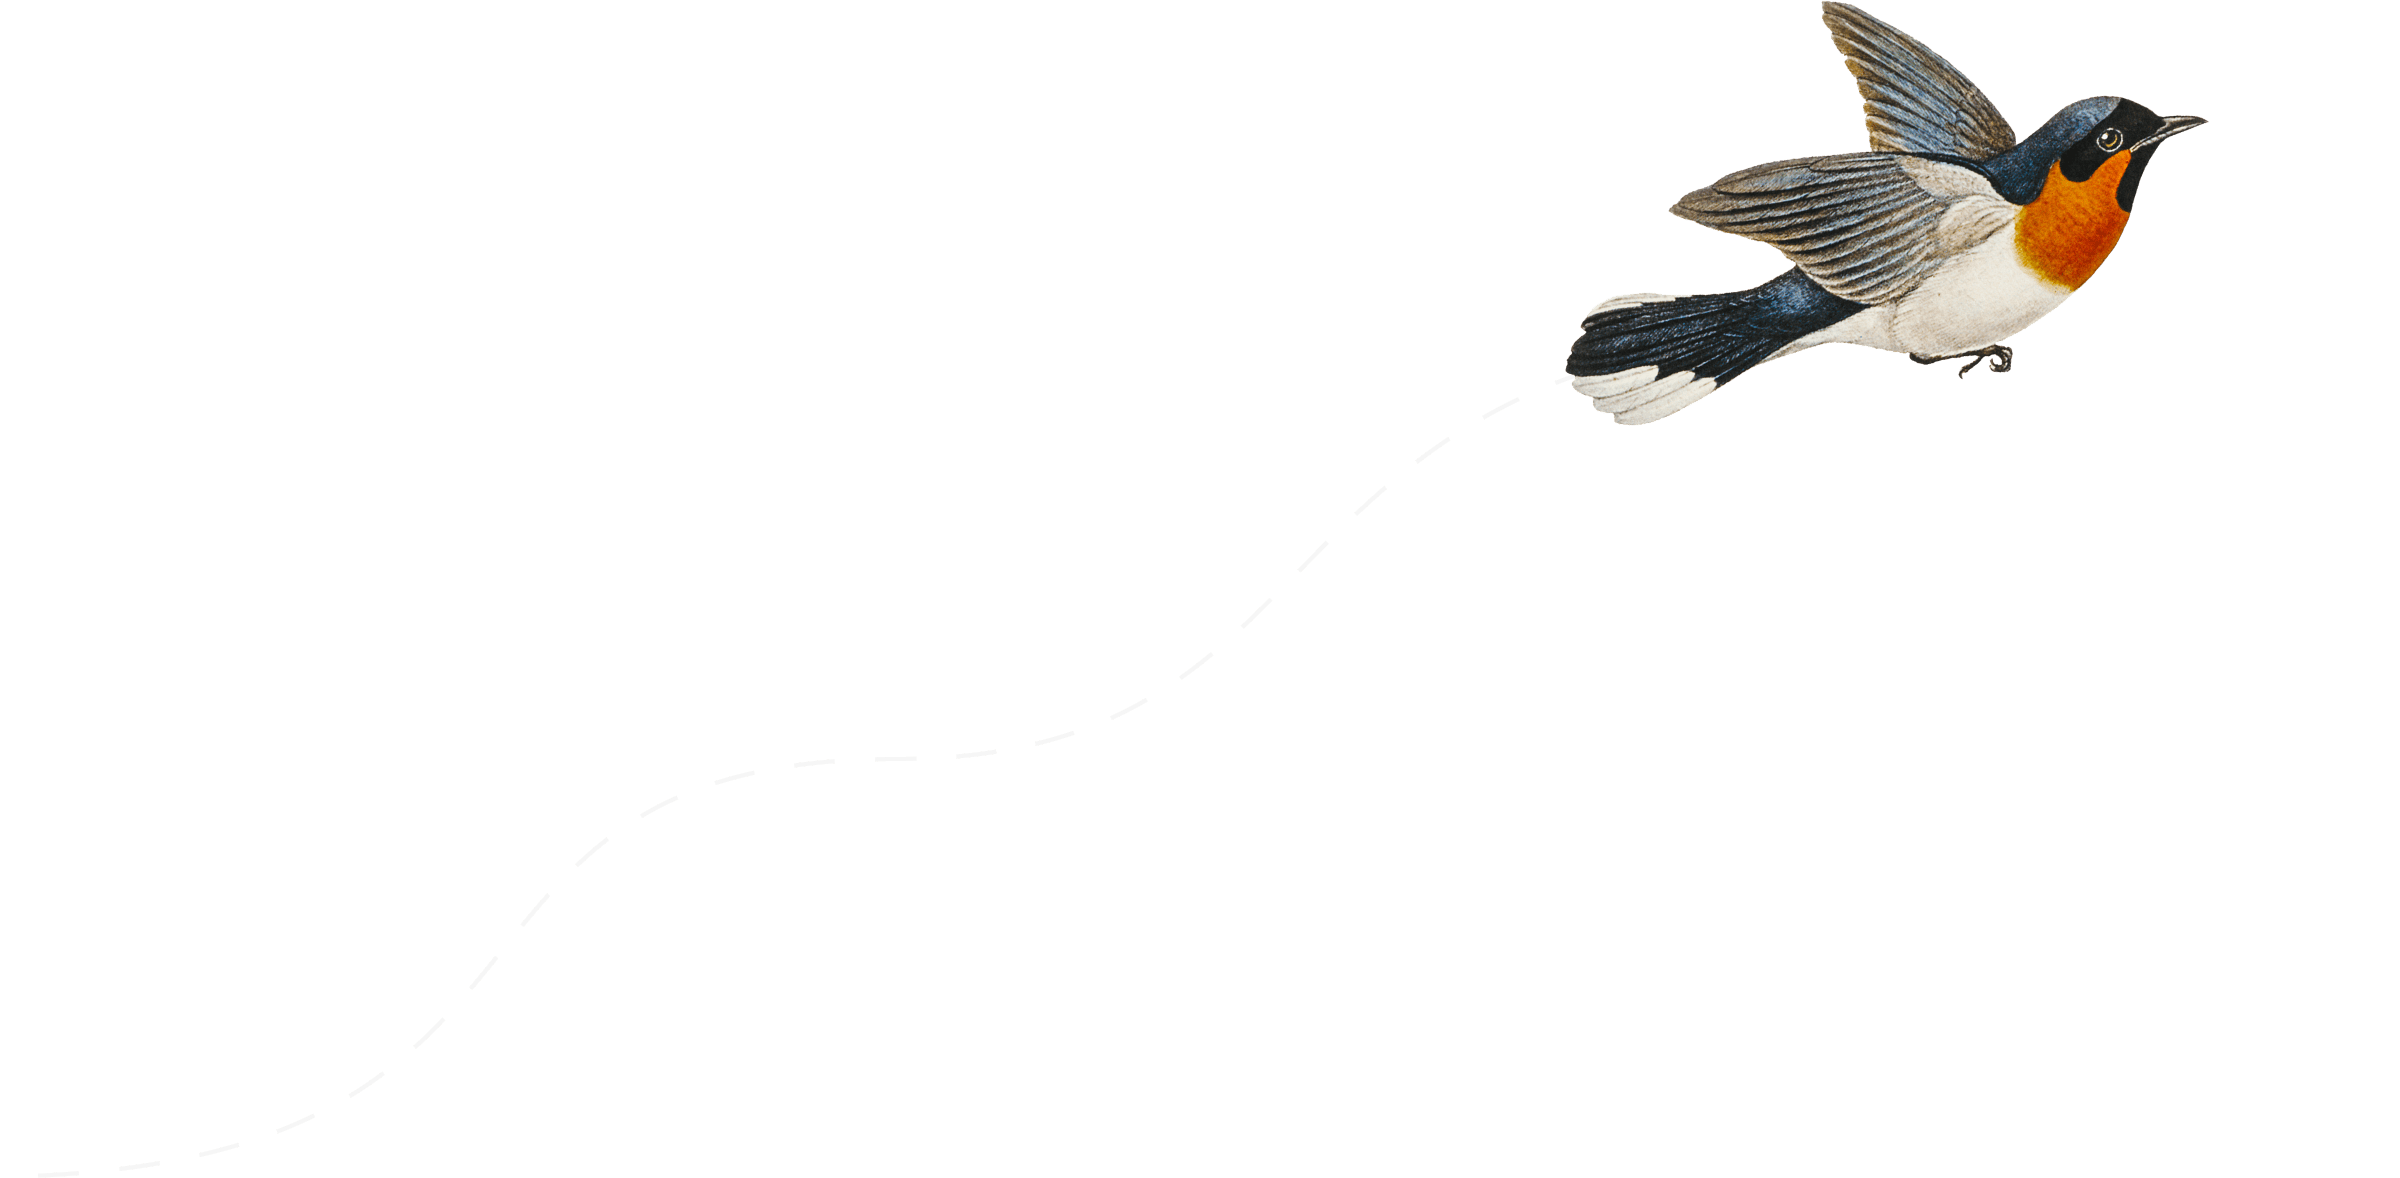 An illustration of a bird in flight